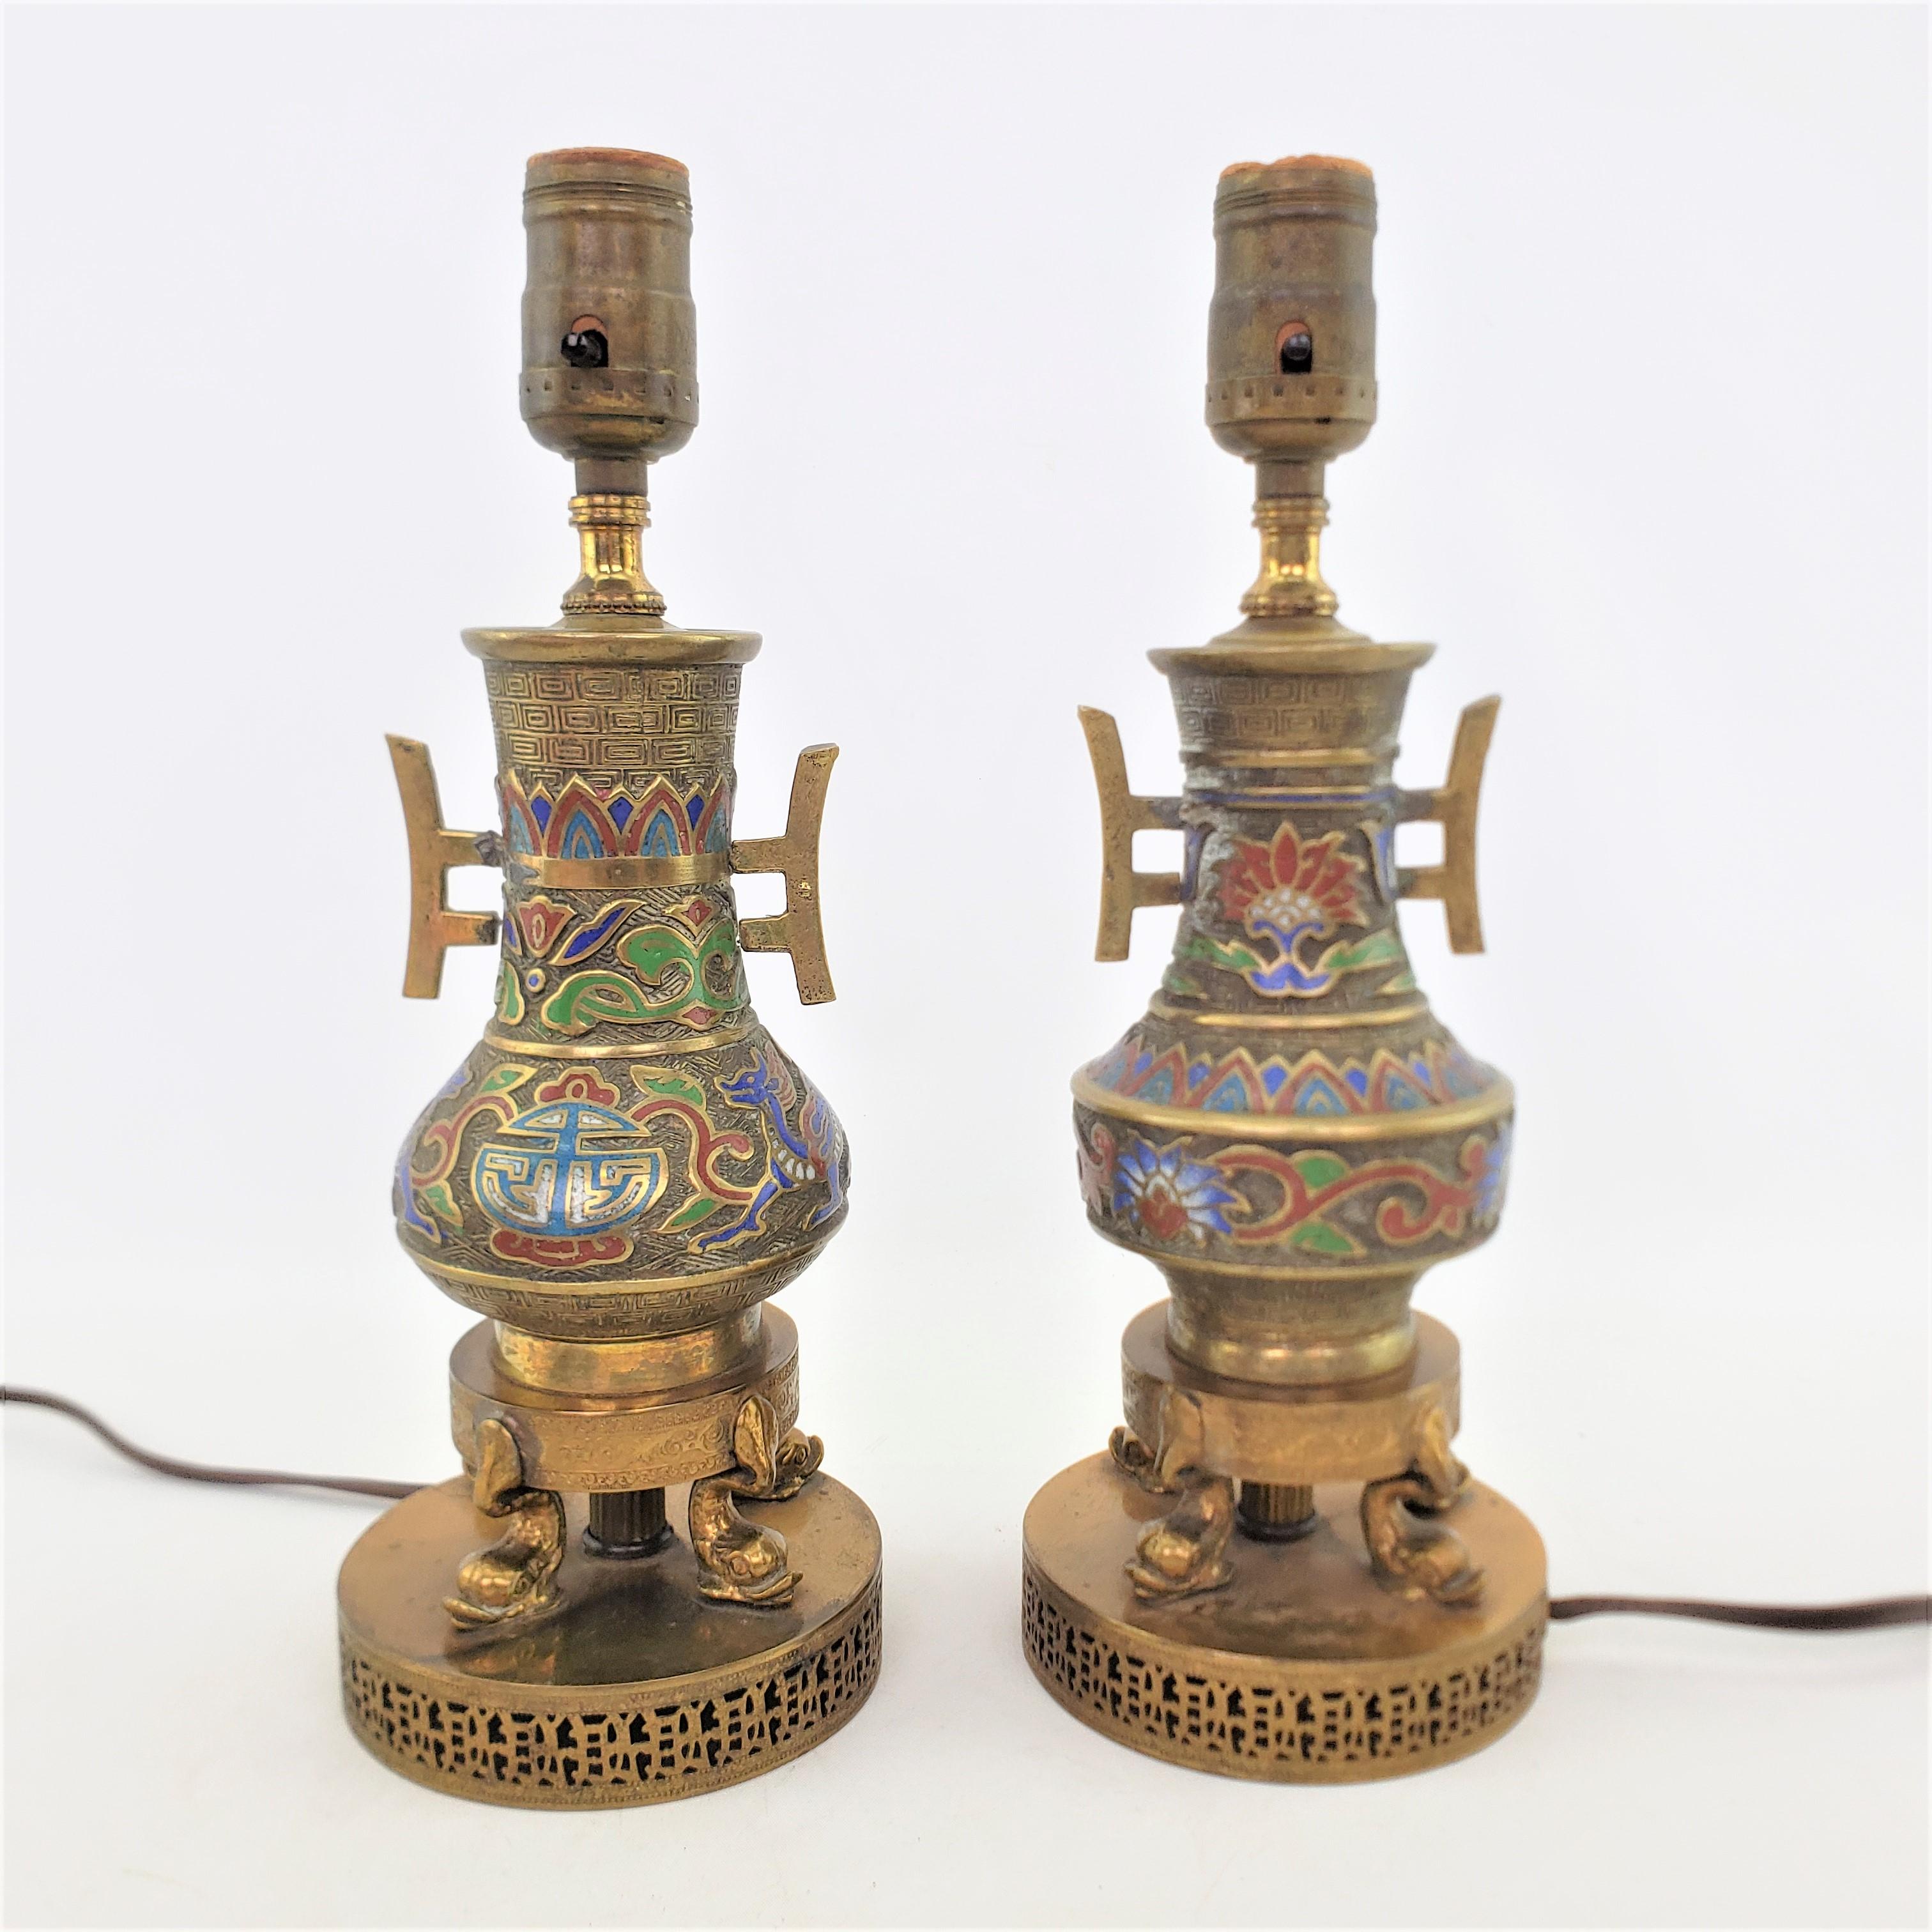 Dieses Paar nicht zusammenpassender antiker Lampen ist unsigniert, stammt aber vermutlich aus Japan und wurde um 1920 in einem anglo-japanischen Stil gefertigt. Diese kleinen Akzent- oder 